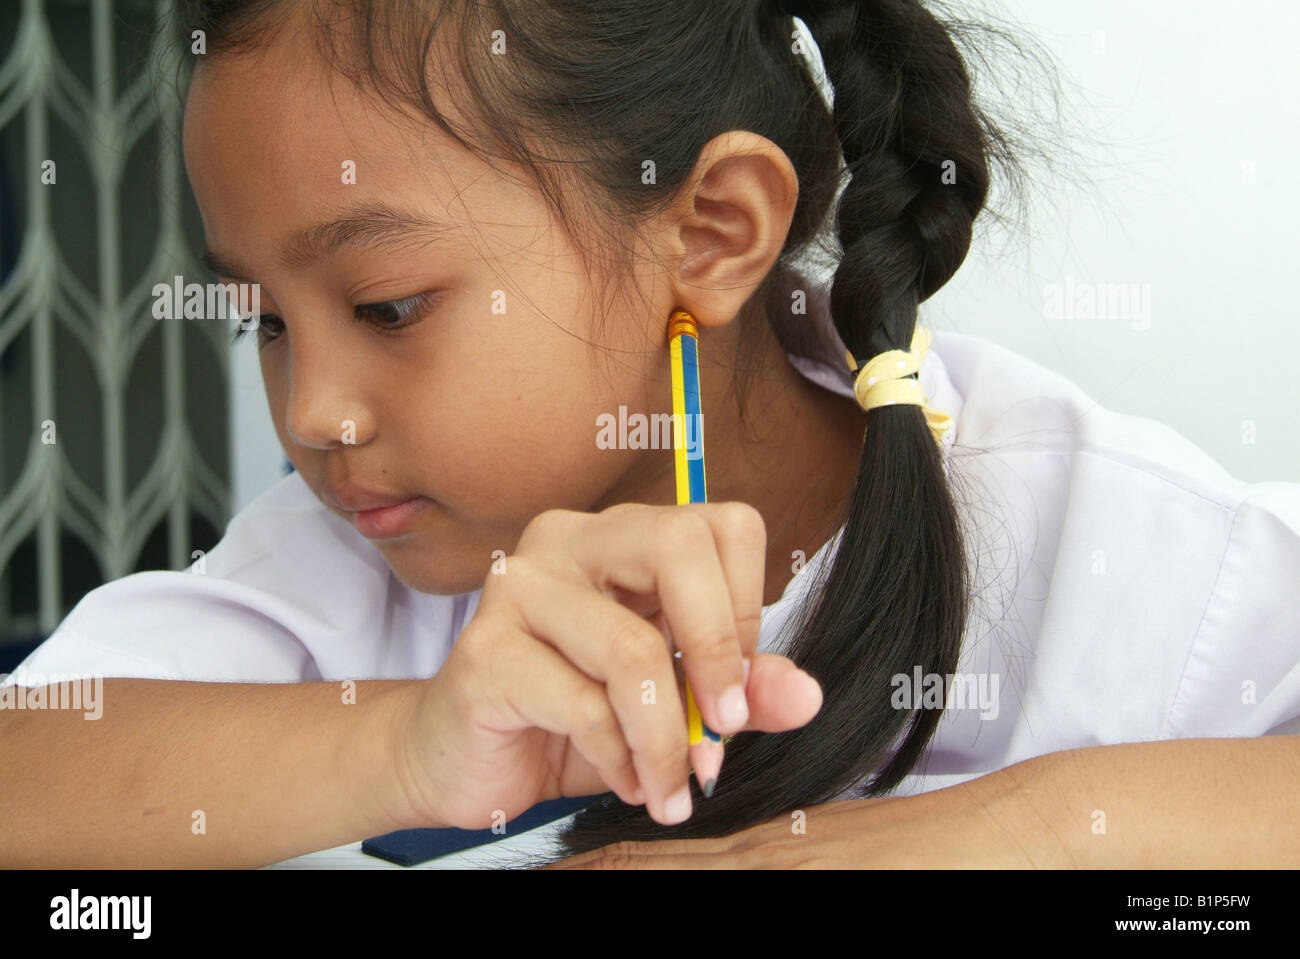 Portrait de Thai girl 8 ans dans l'uniforme scolaire Banque D'Images